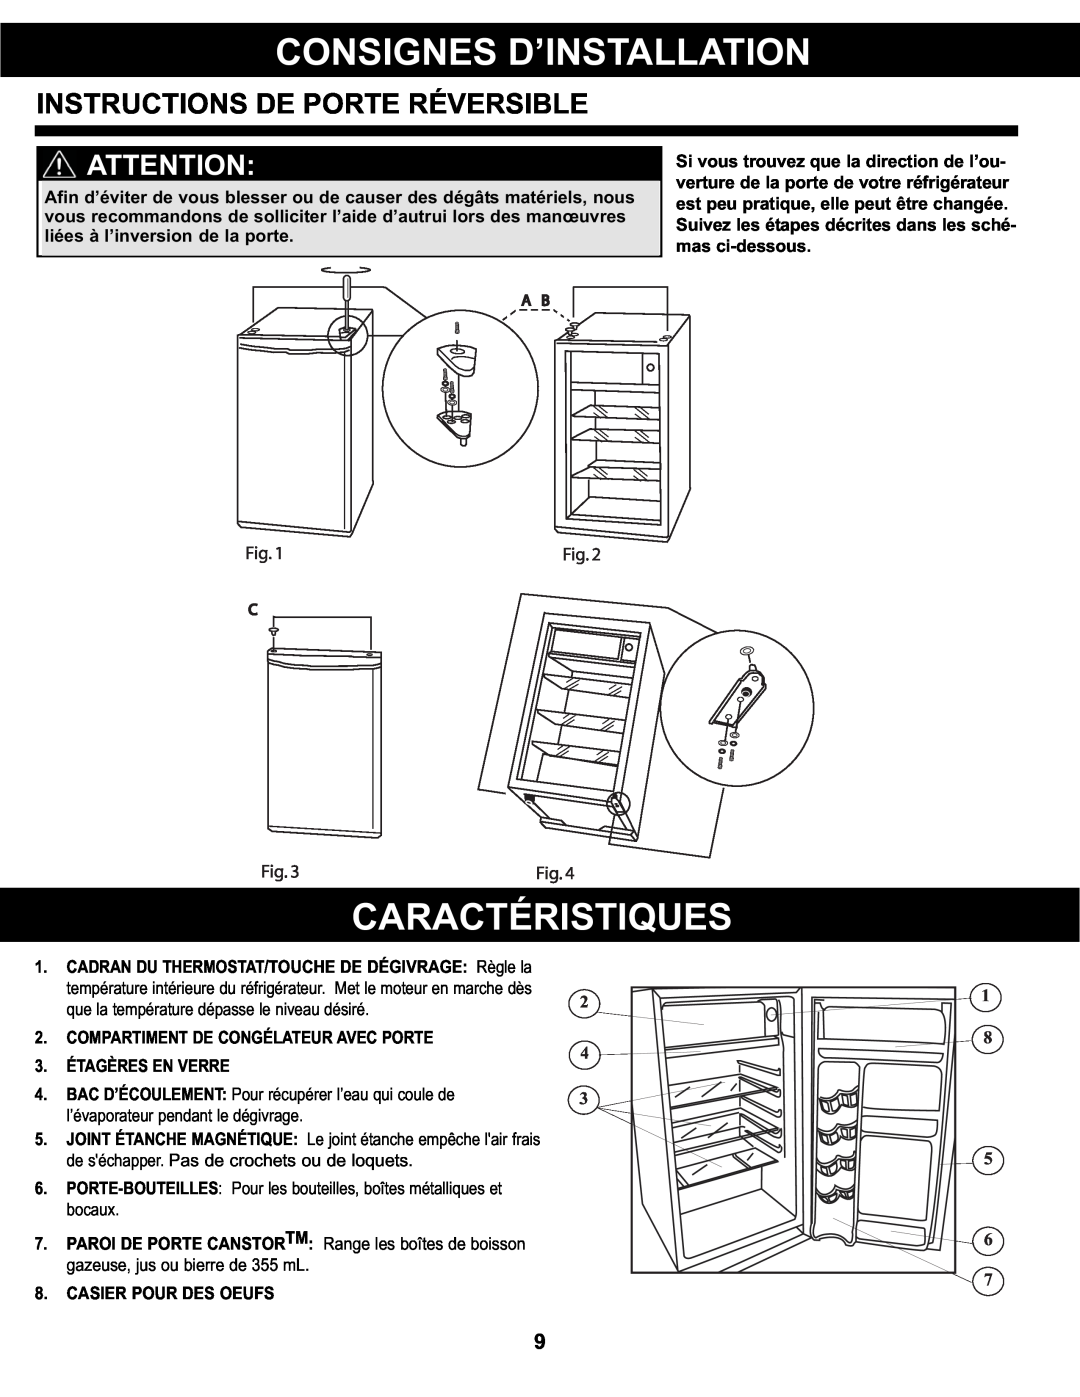 Danby DCR044A2BDD Caractéristiques, Instructions De Porte Réversible, Casier Pour Des Oeufs, Consignes D’Installation 